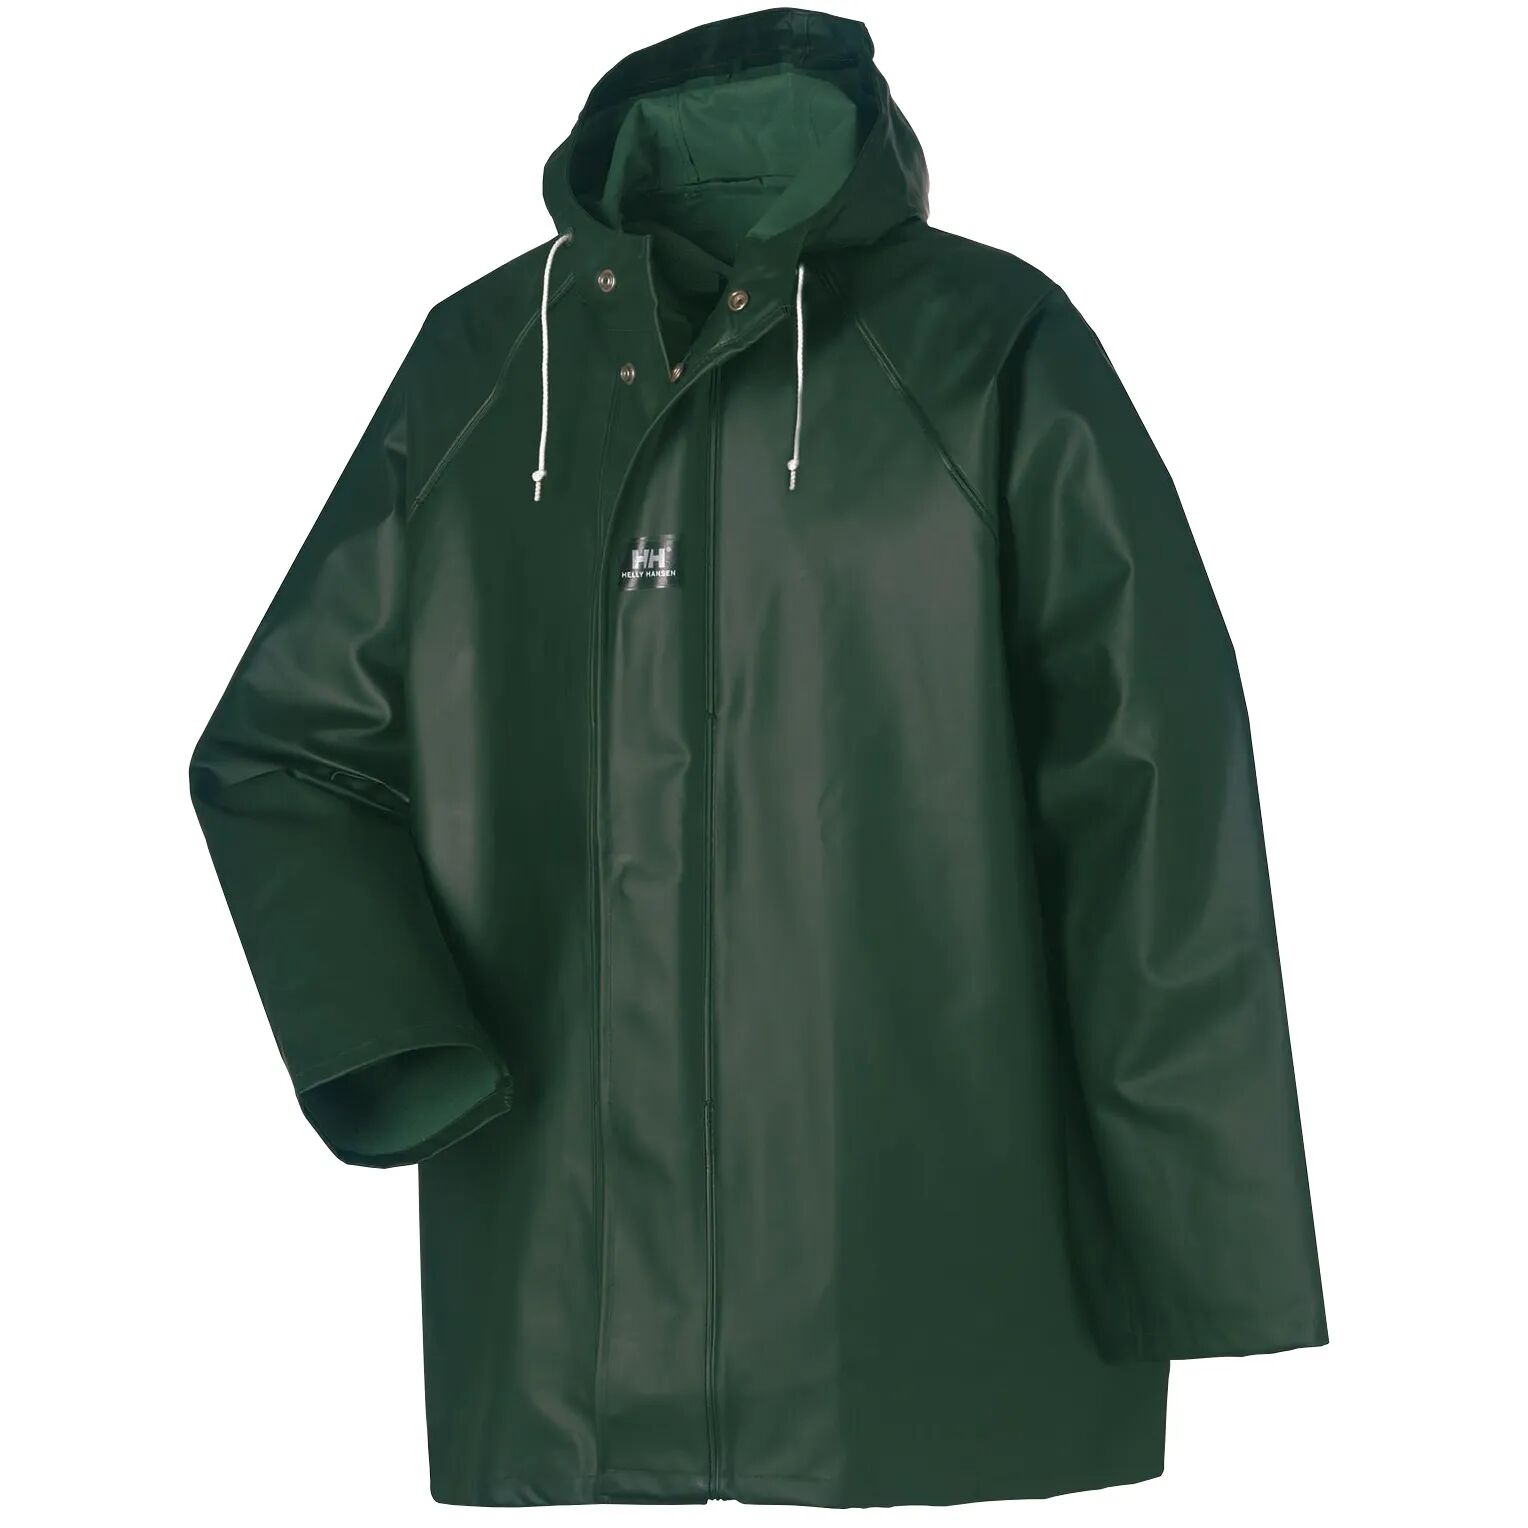 HH Workwear Helly Hansen WorkwearHighliner 100% Cotton Waterproof Jacket Green L